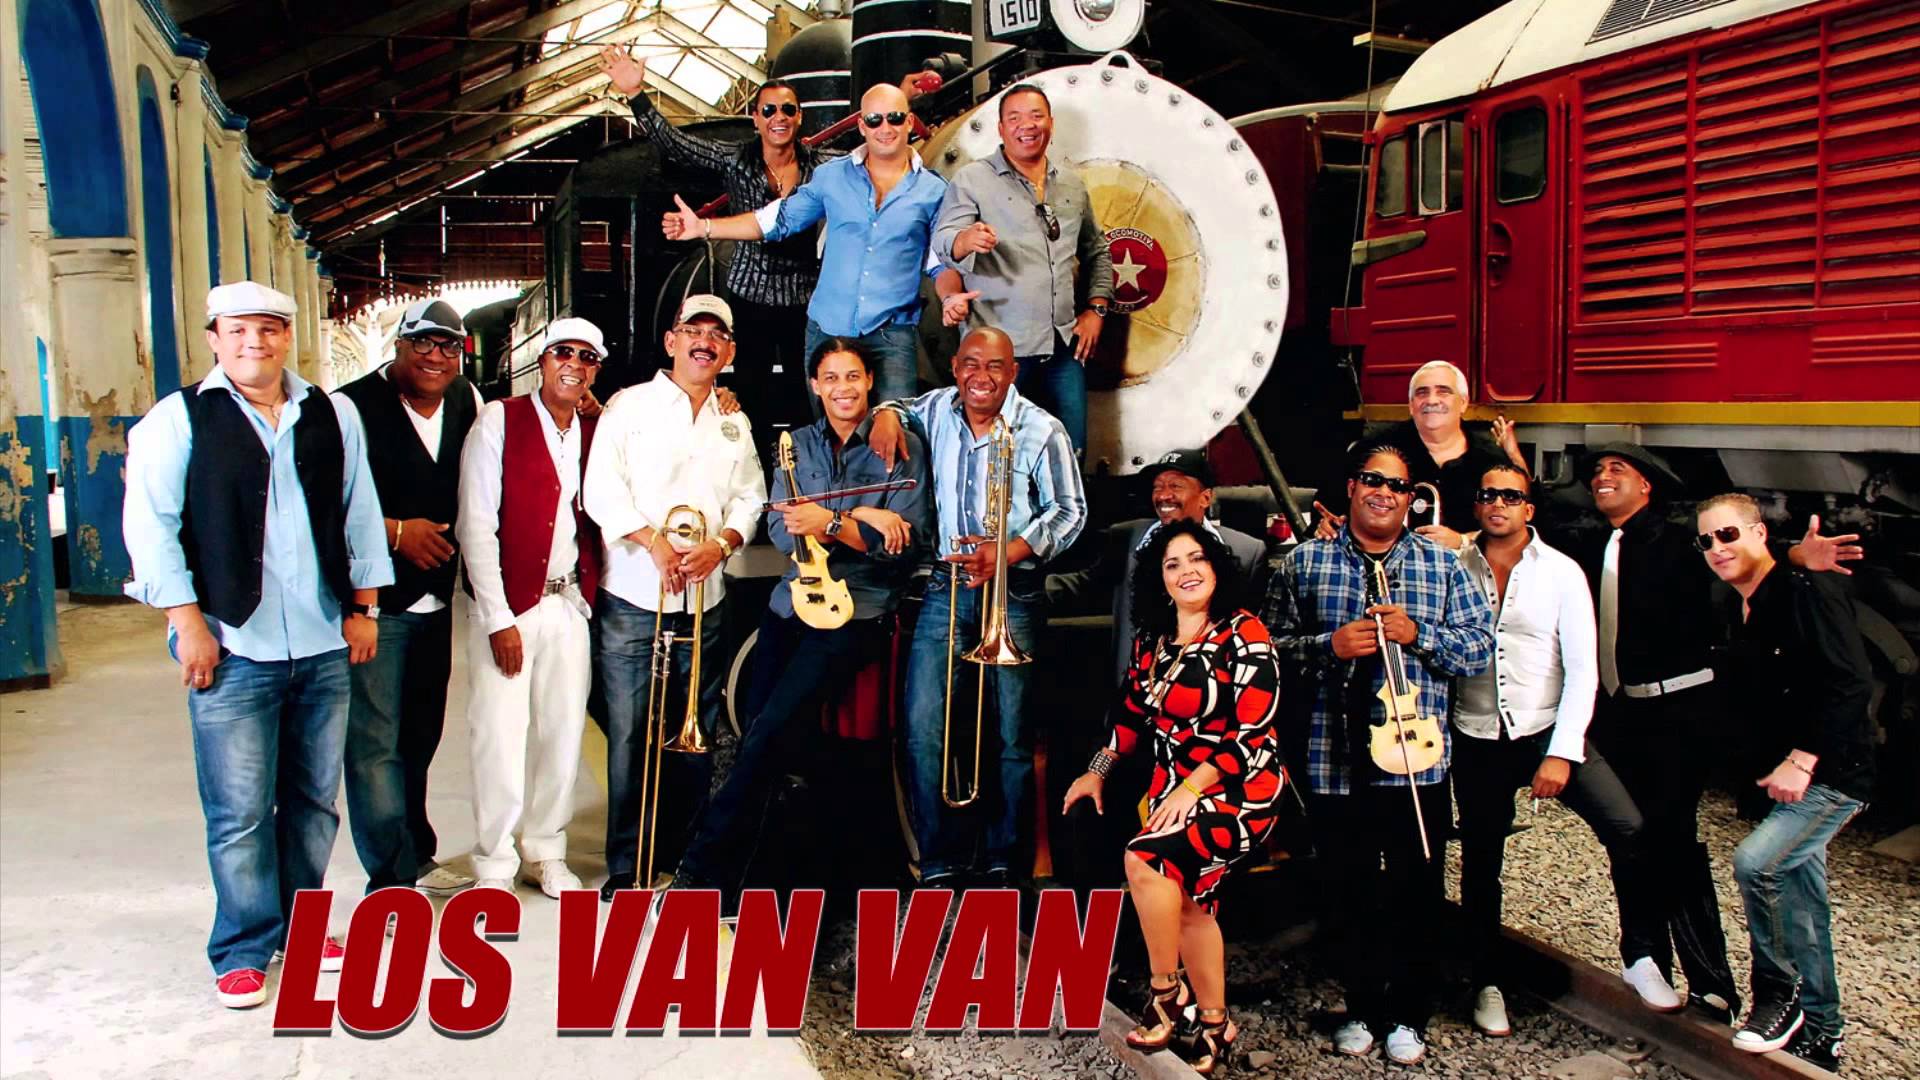 Los Van Van bring Cuban music to the United States ElReporterosf